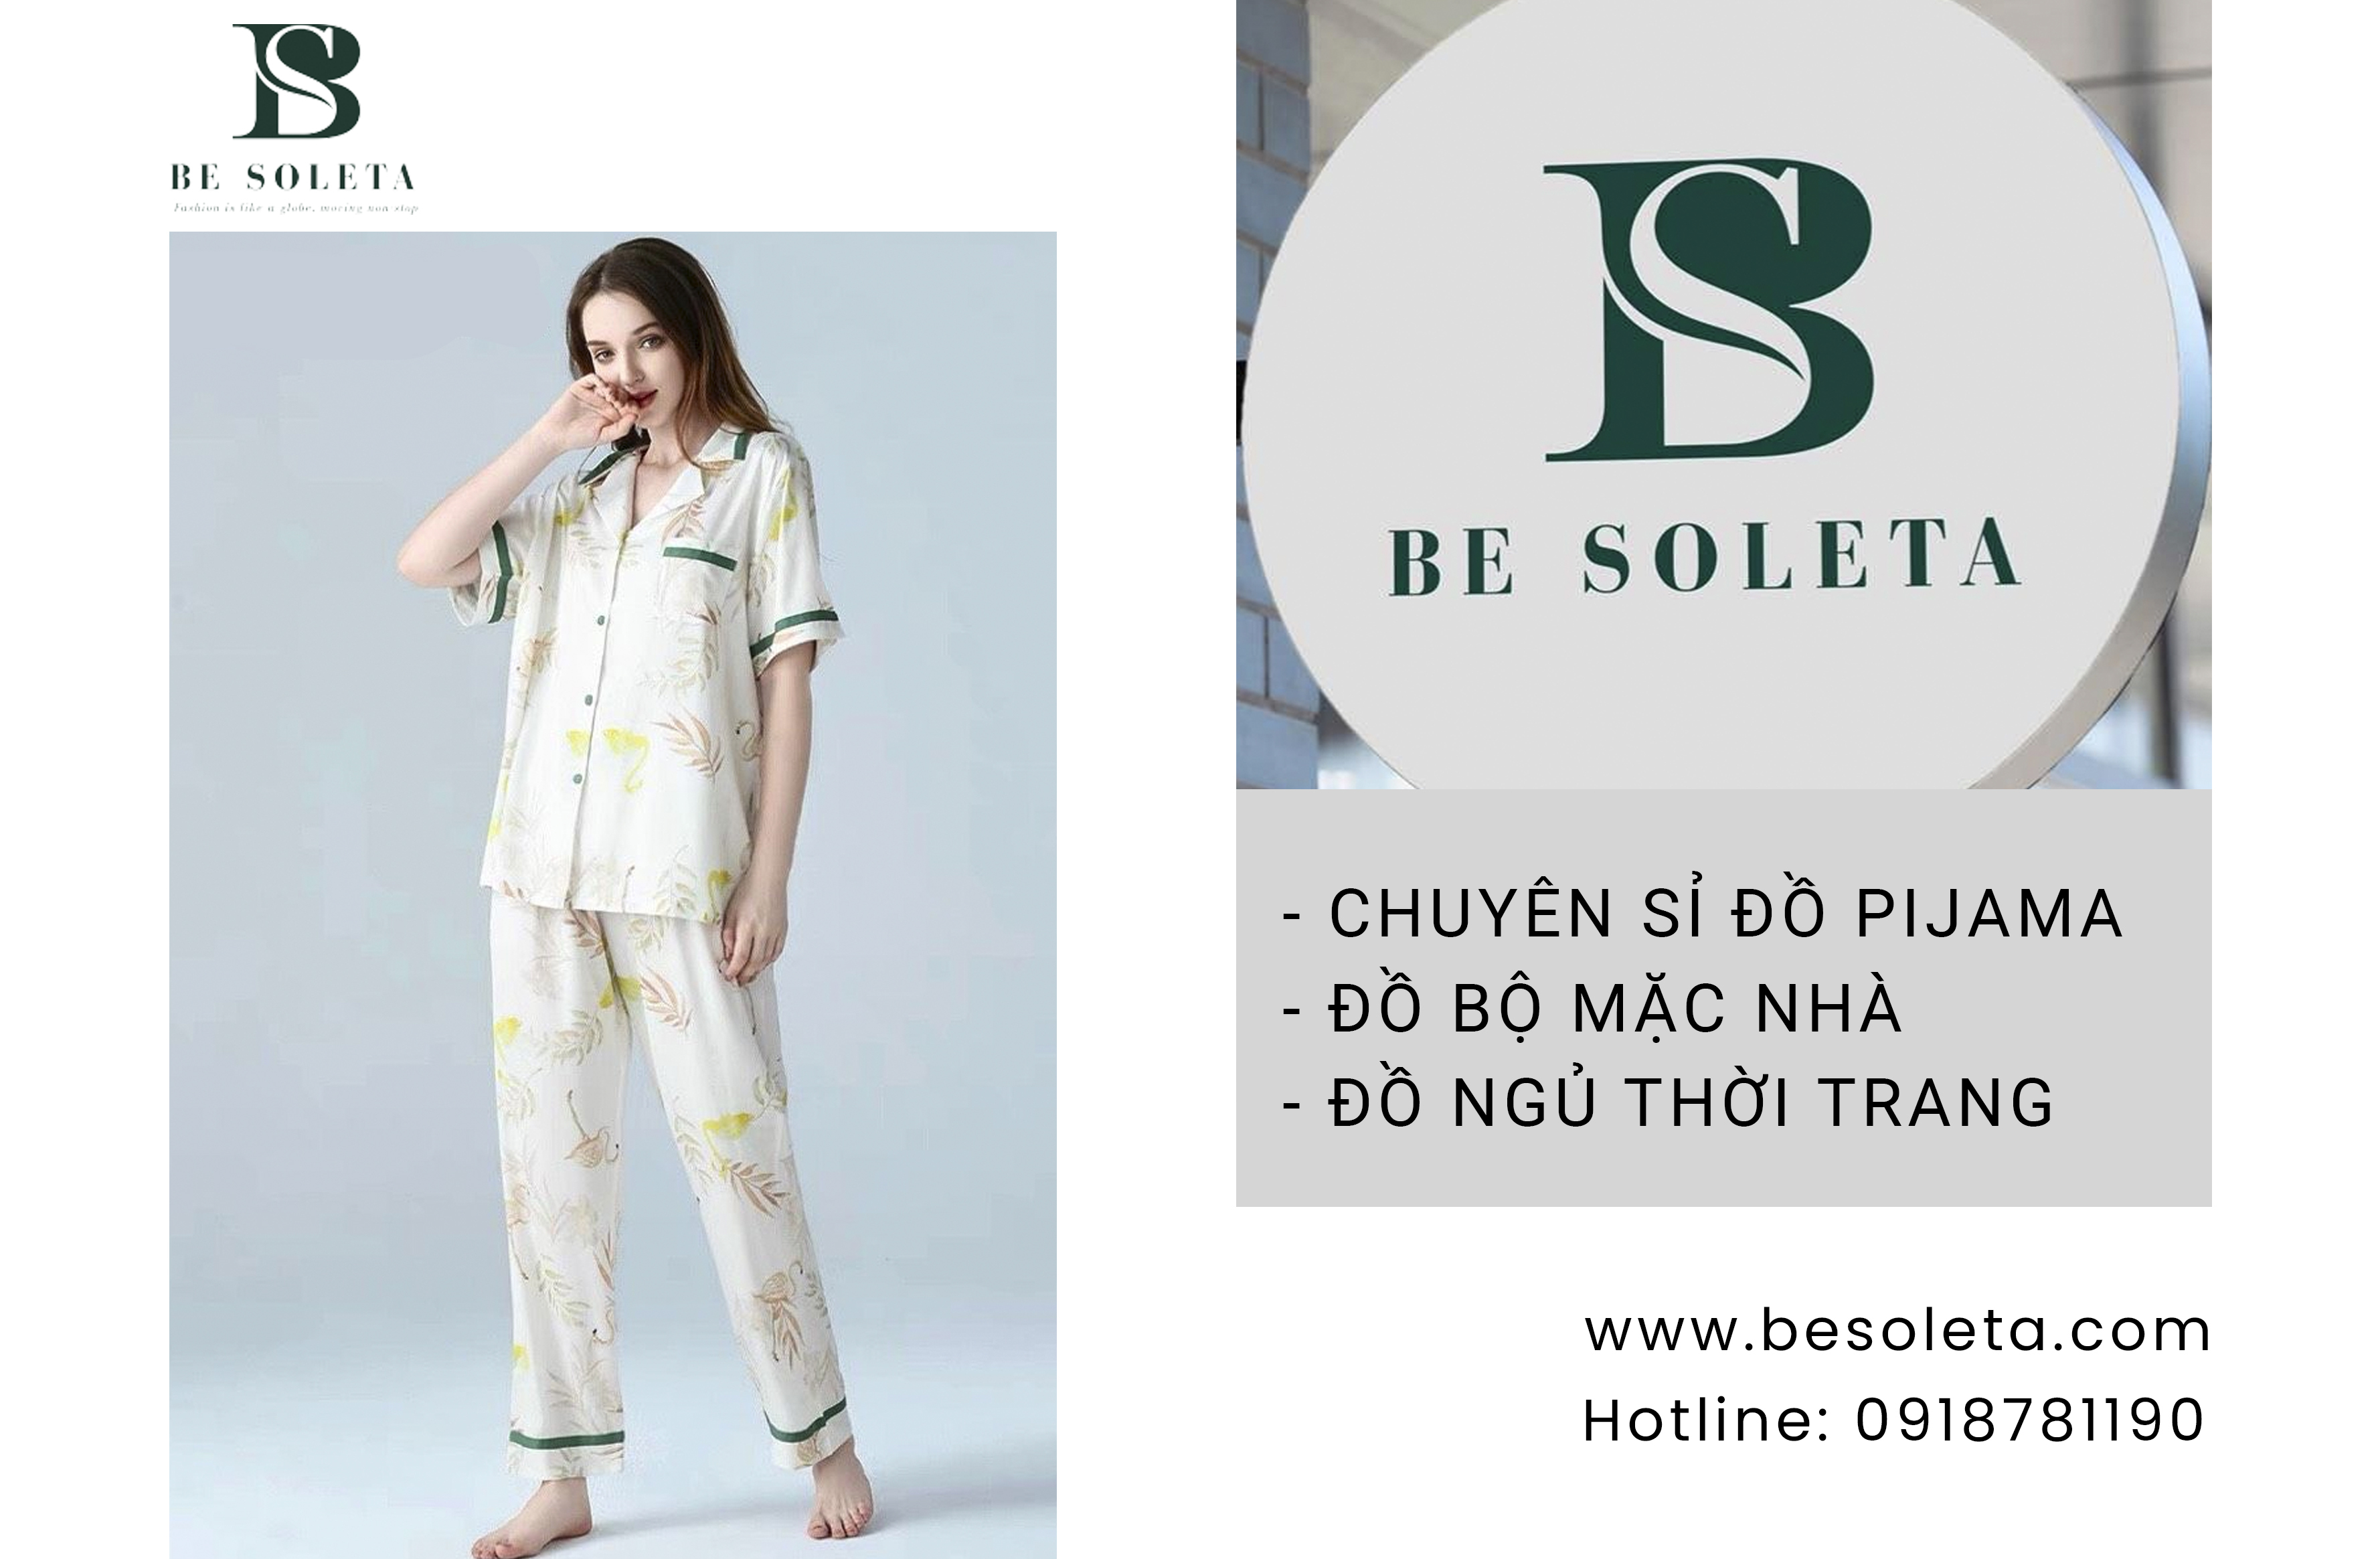 Be Soleta - Xưởng đồ bộ nữ, thời trang Pijama chất lượng tại Hà Nội